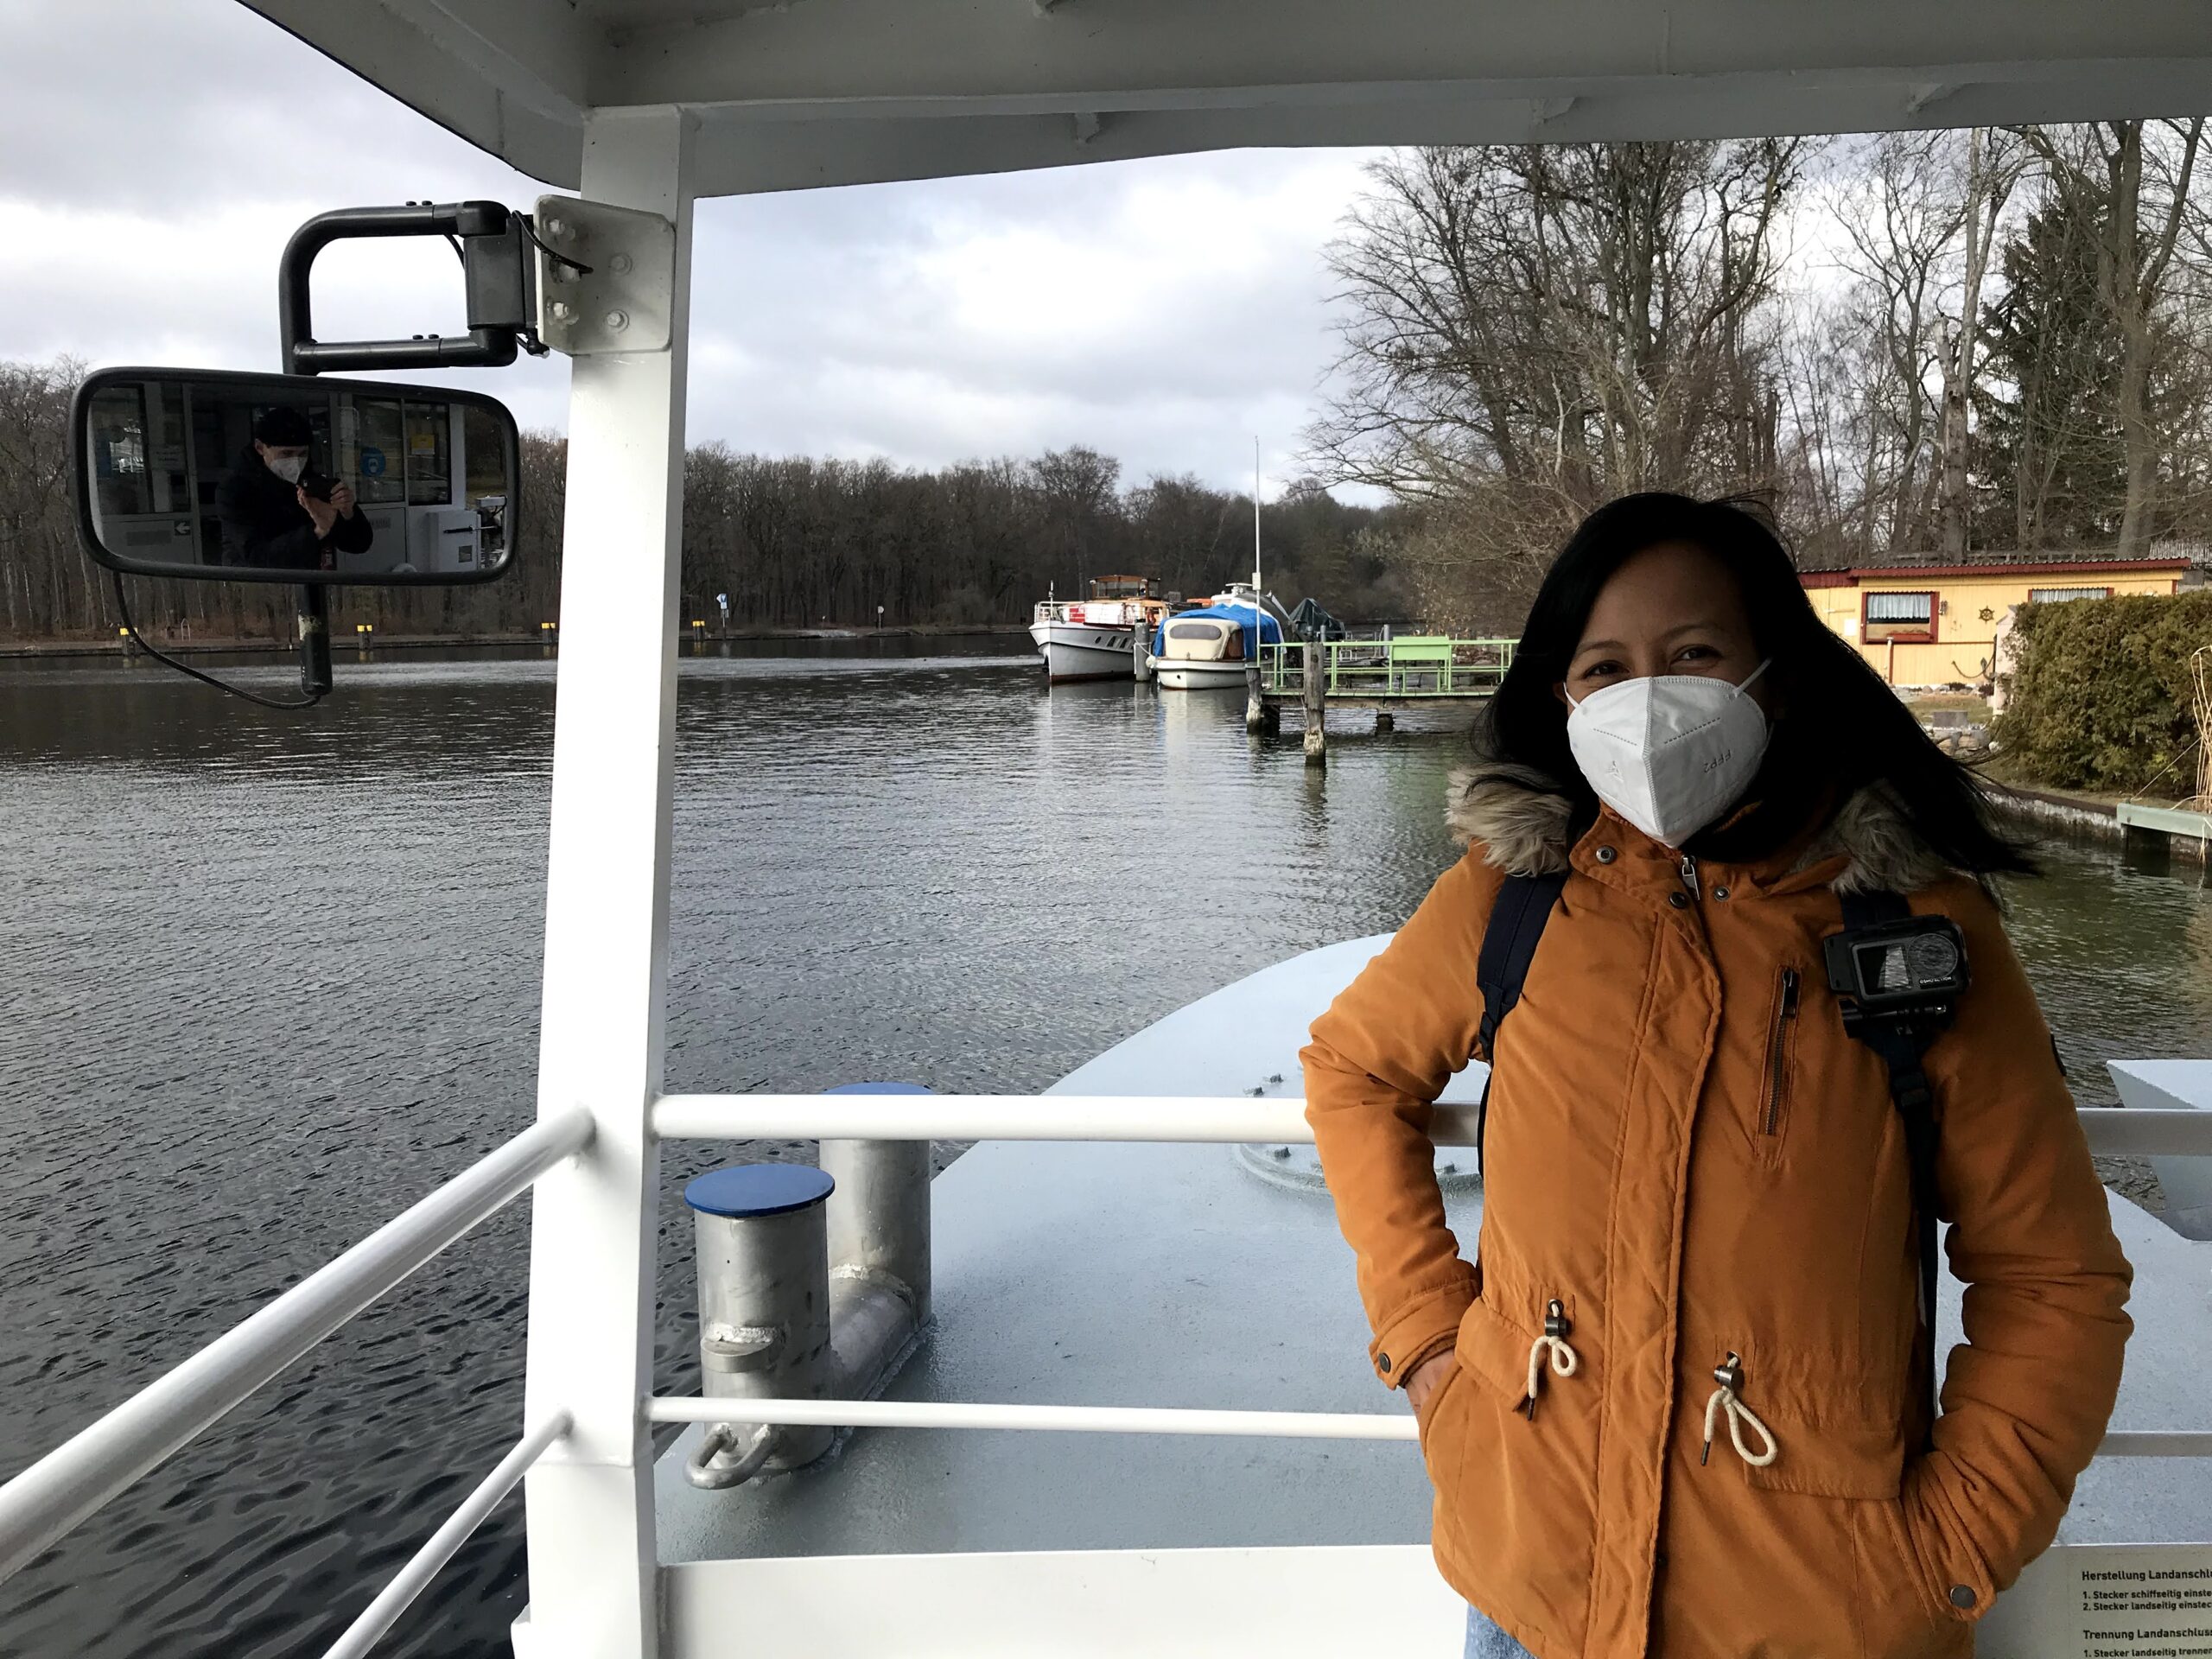 Berlin Ferry Story #2